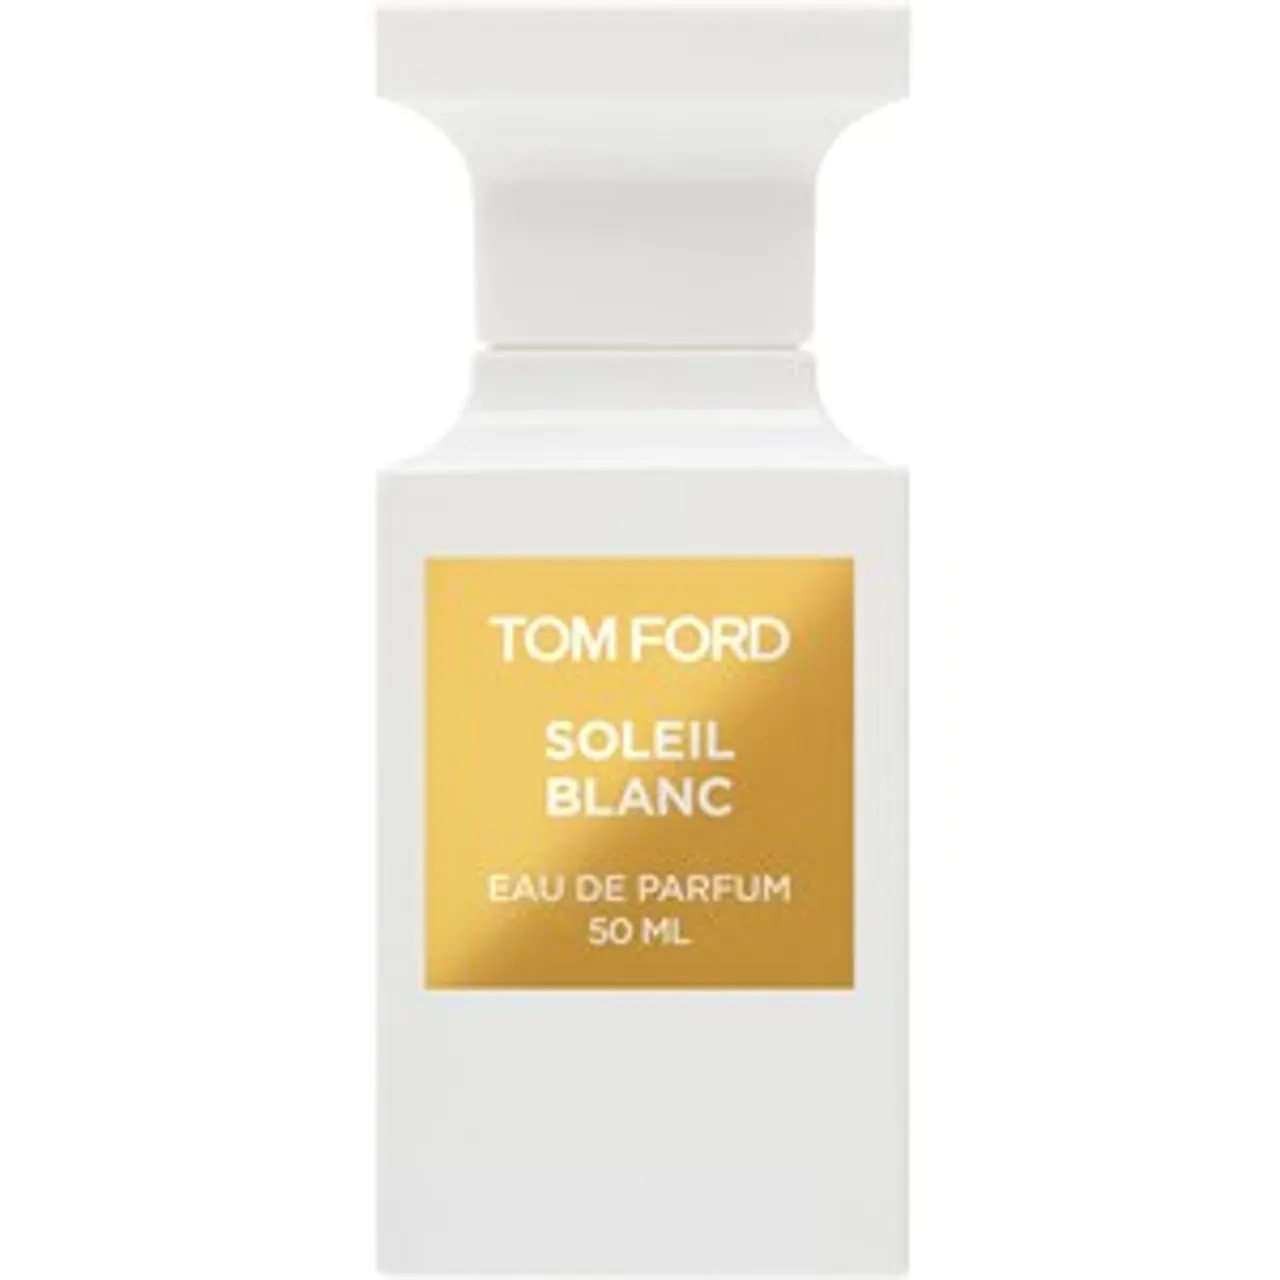 Tom Ford Eau de Parfum Spray 0 50 ml